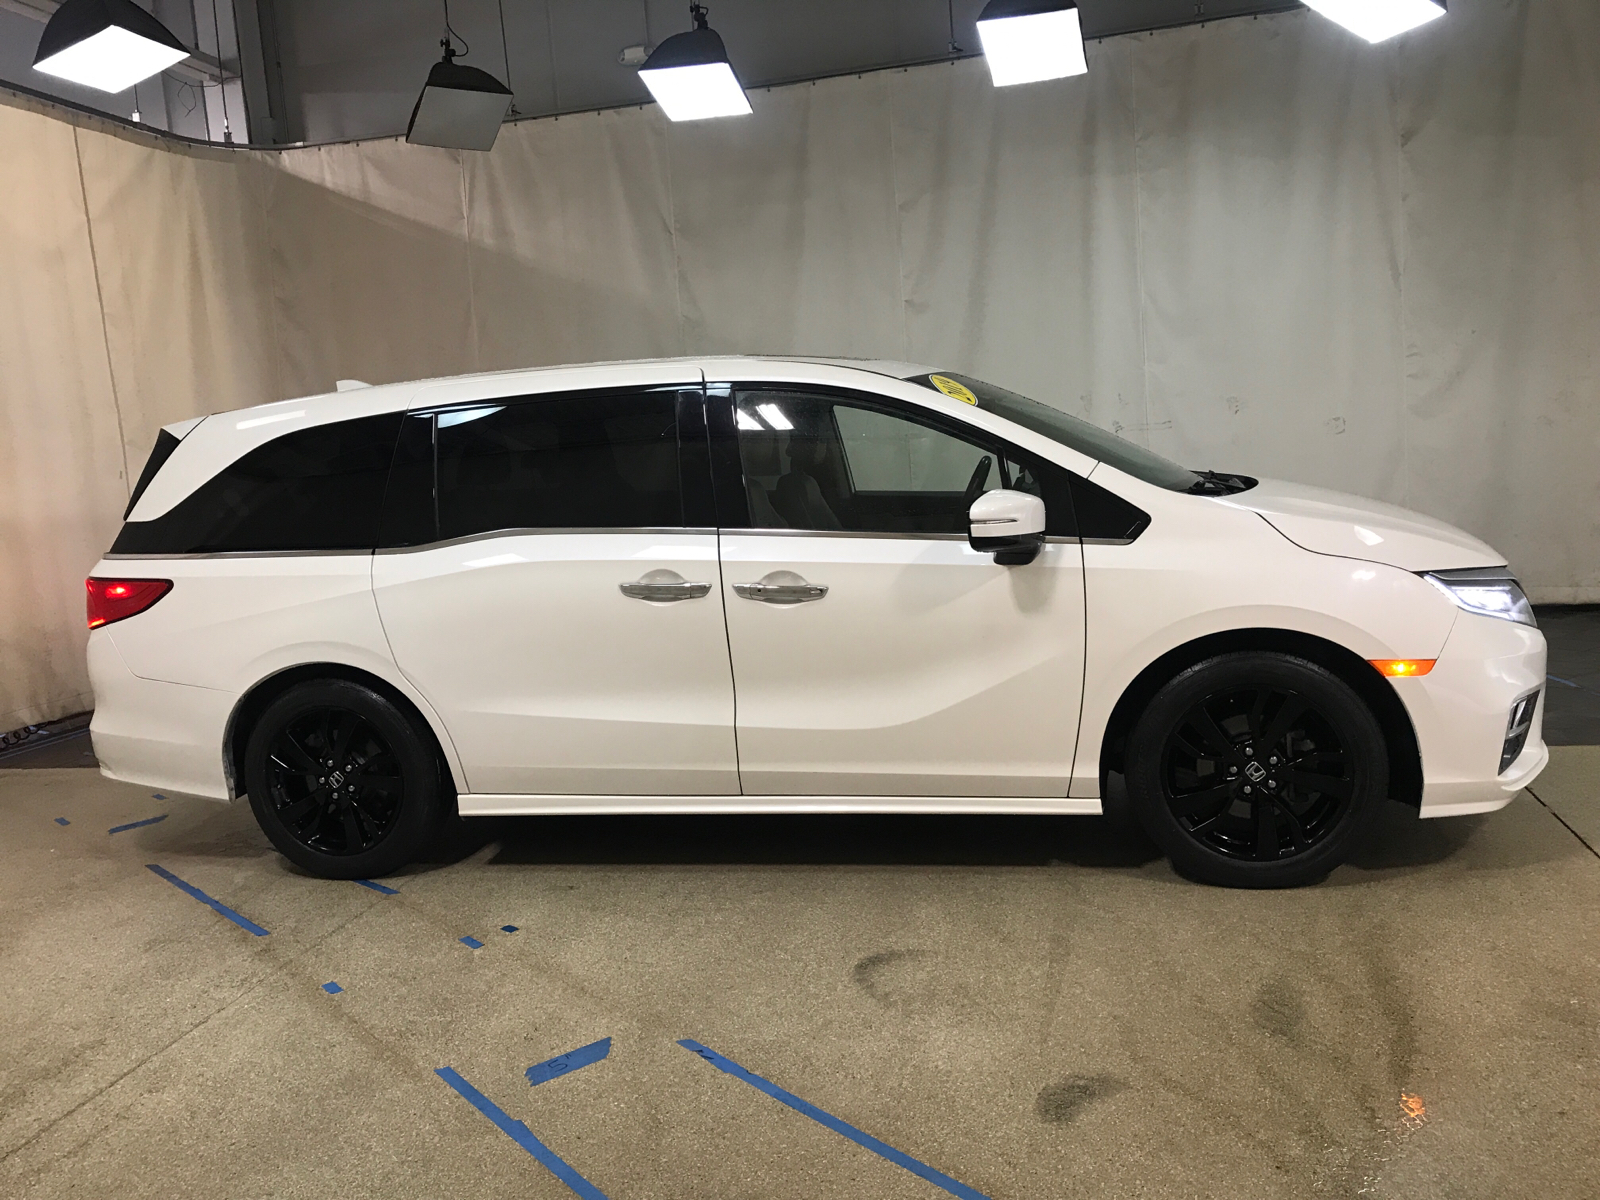 2019 Honda Odyssey Elite 2